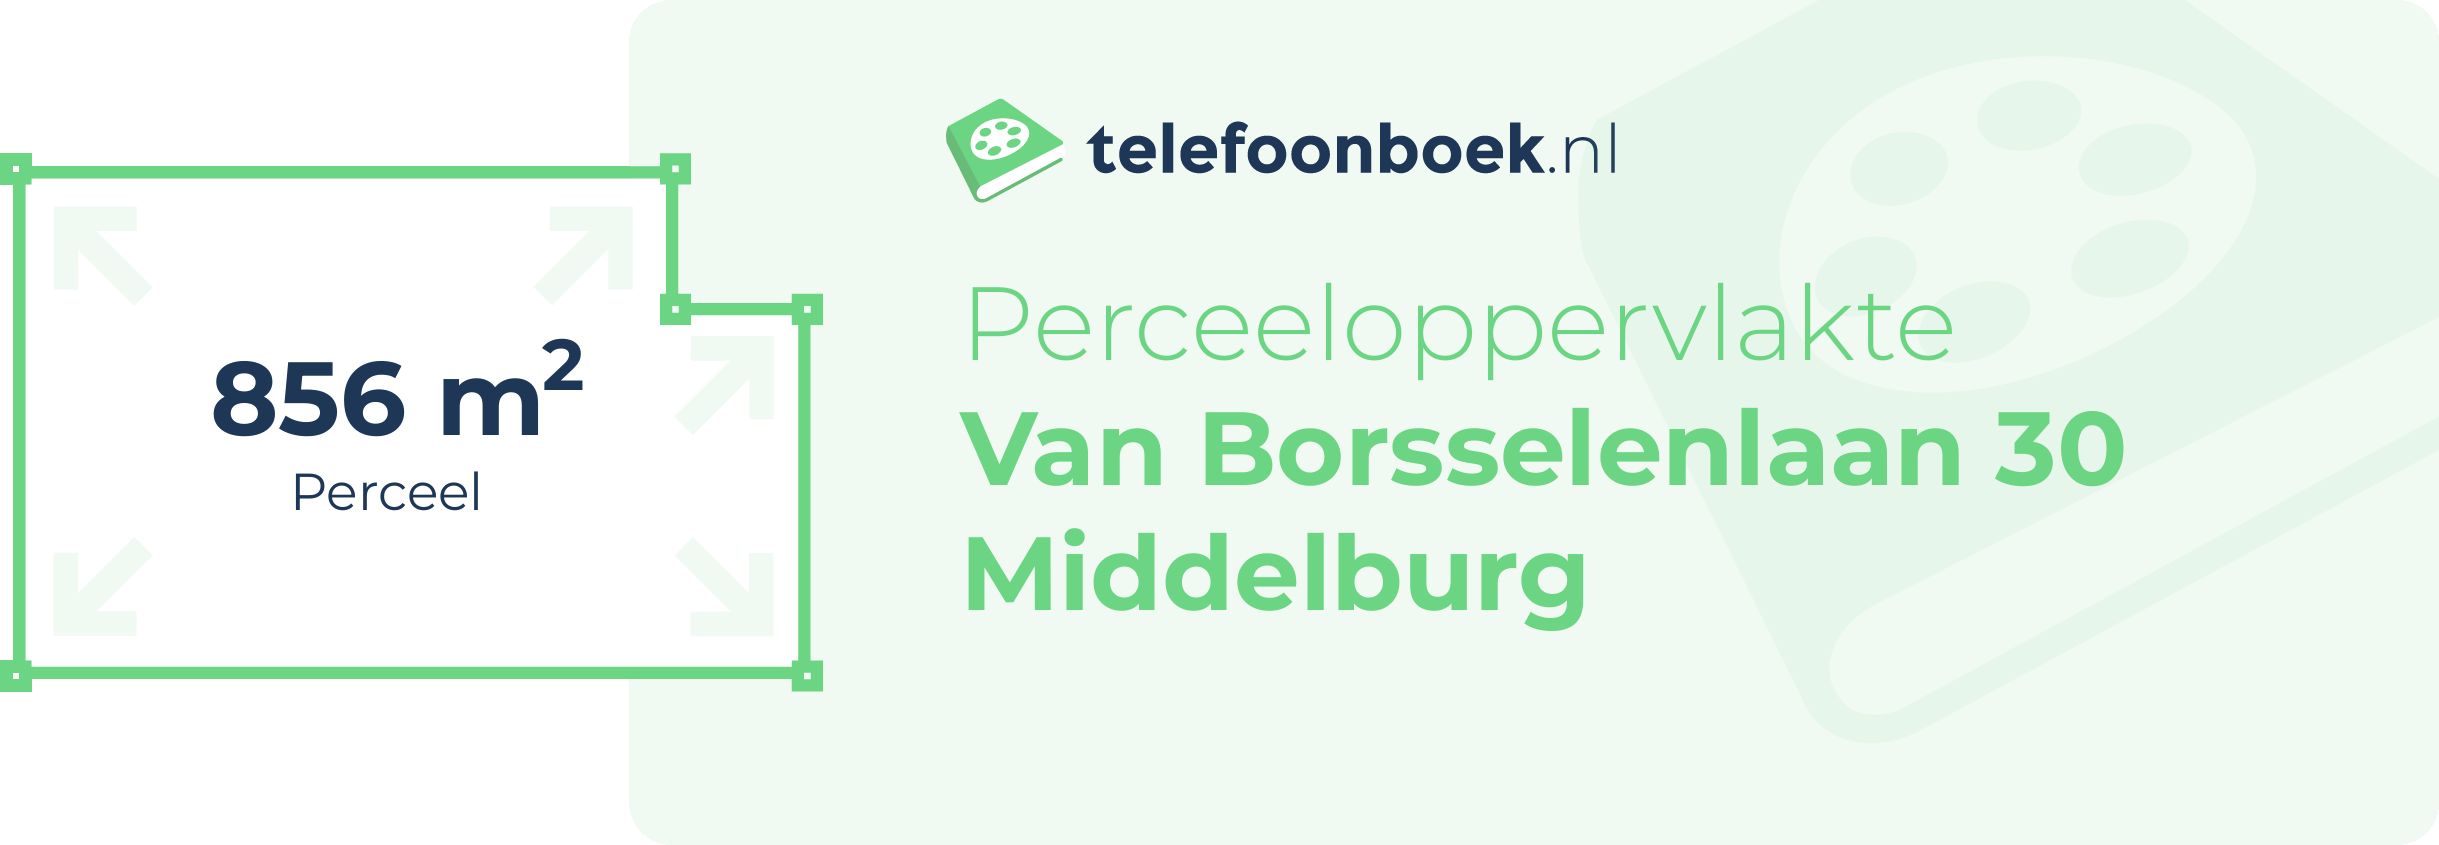 Perceeloppervlakte Van Borsselenlaan 30 Middelburg